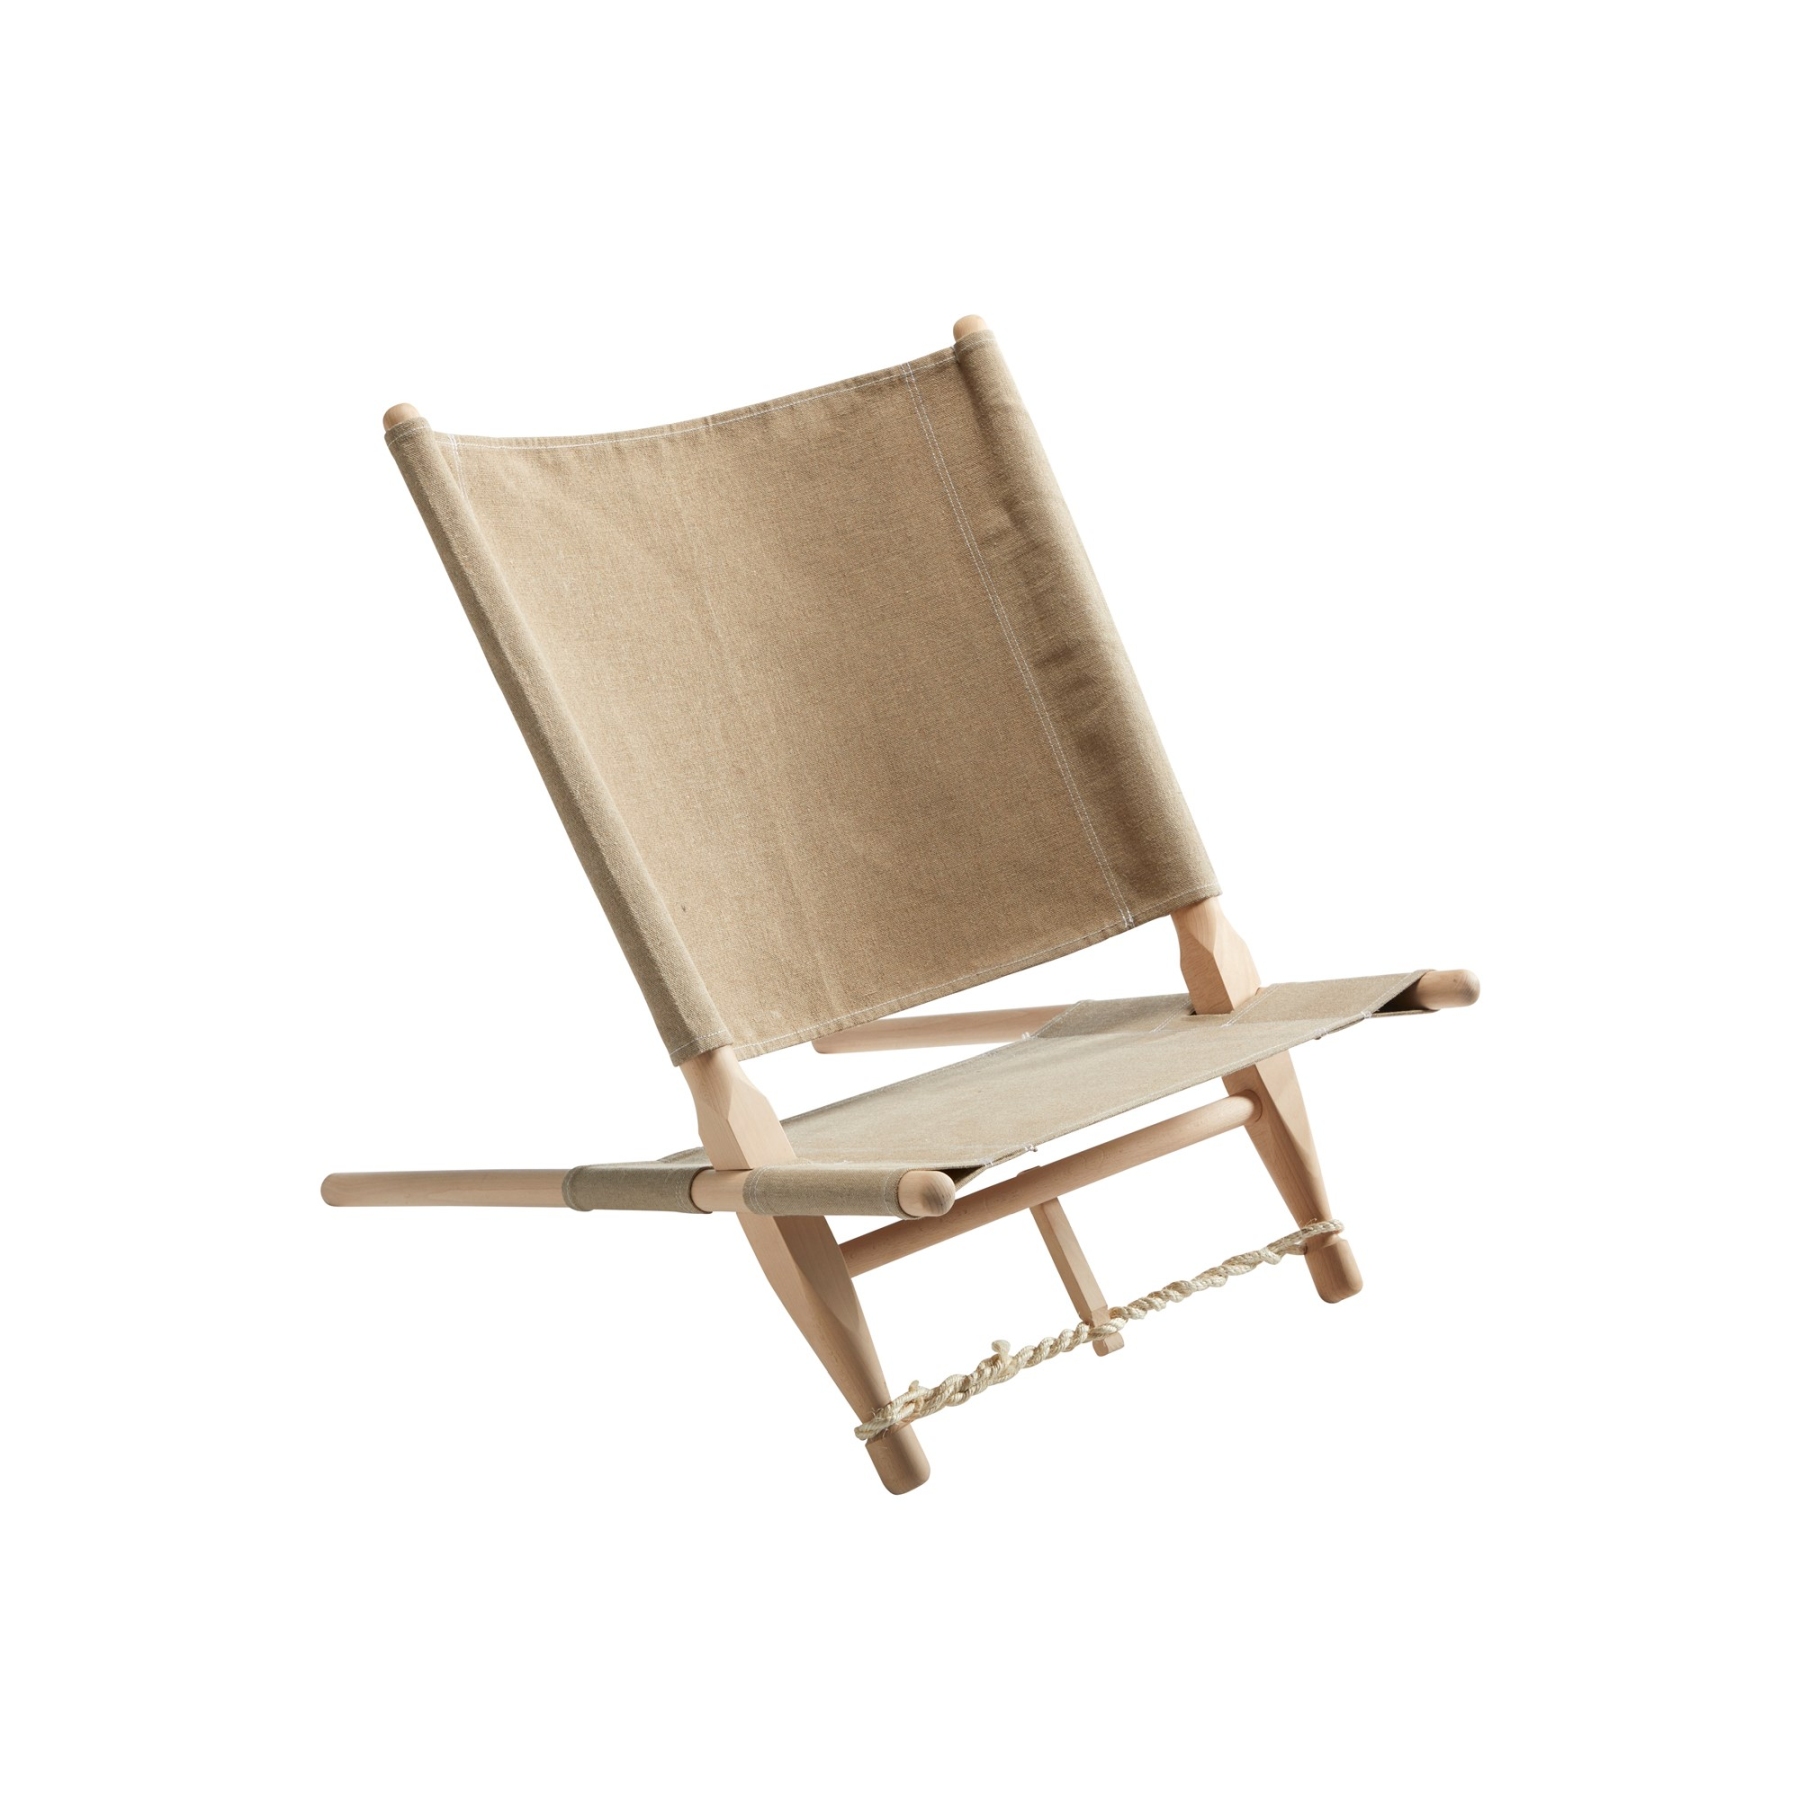 Produktbild von Nordisk Moesgaard Stuhl aus Holz